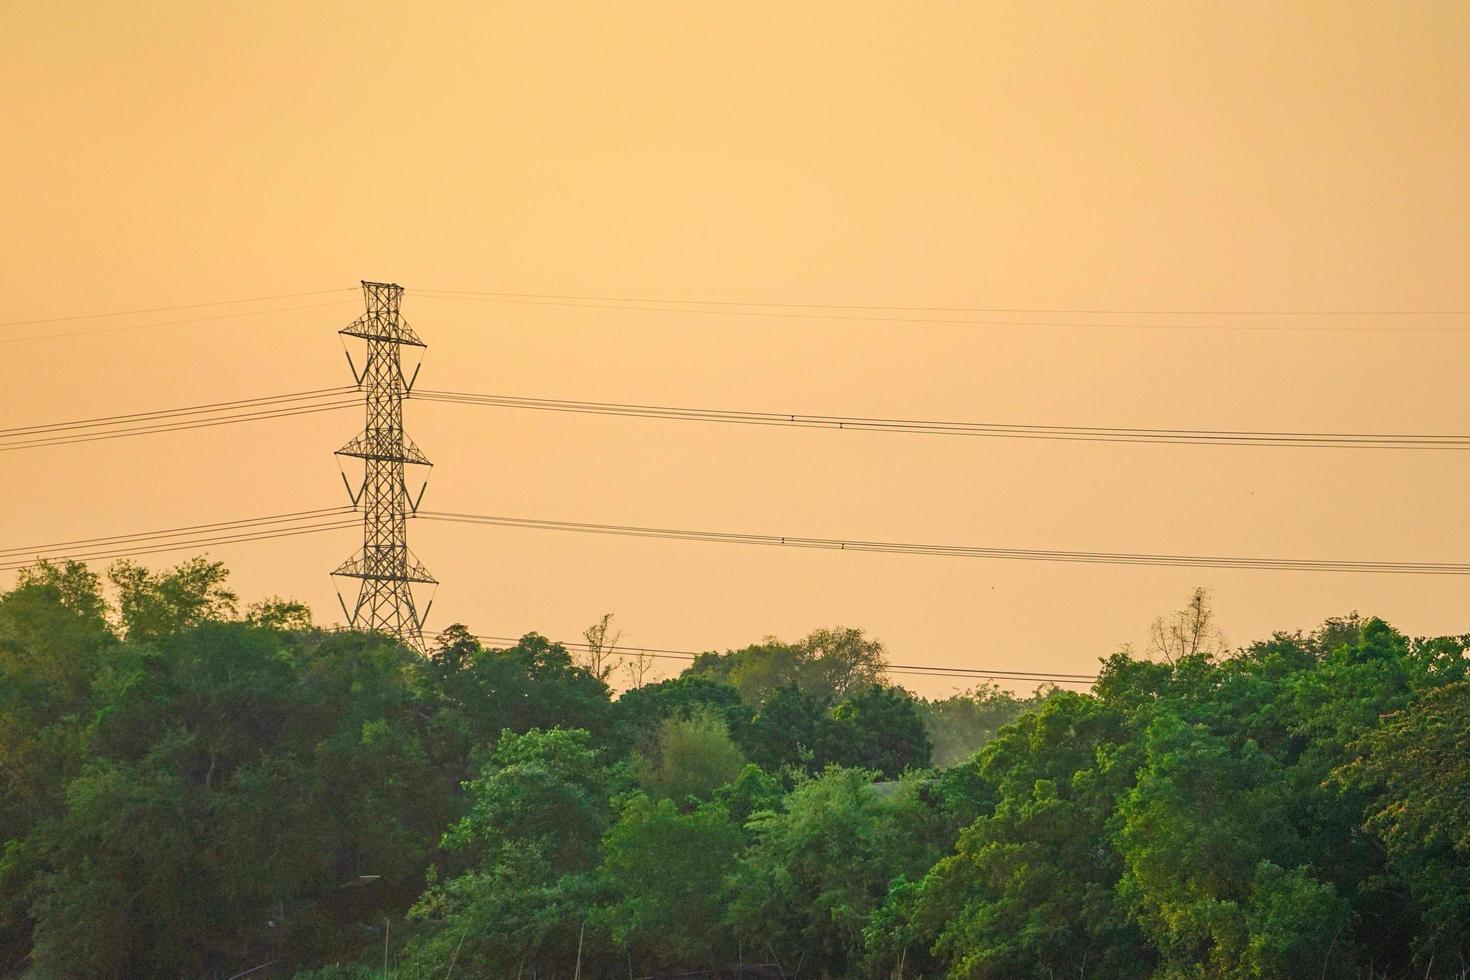 hoogspanning elektriciteitstoren en kabel met oranje hemel zonsondergang achtergrond, landschap van tropisch woud foto